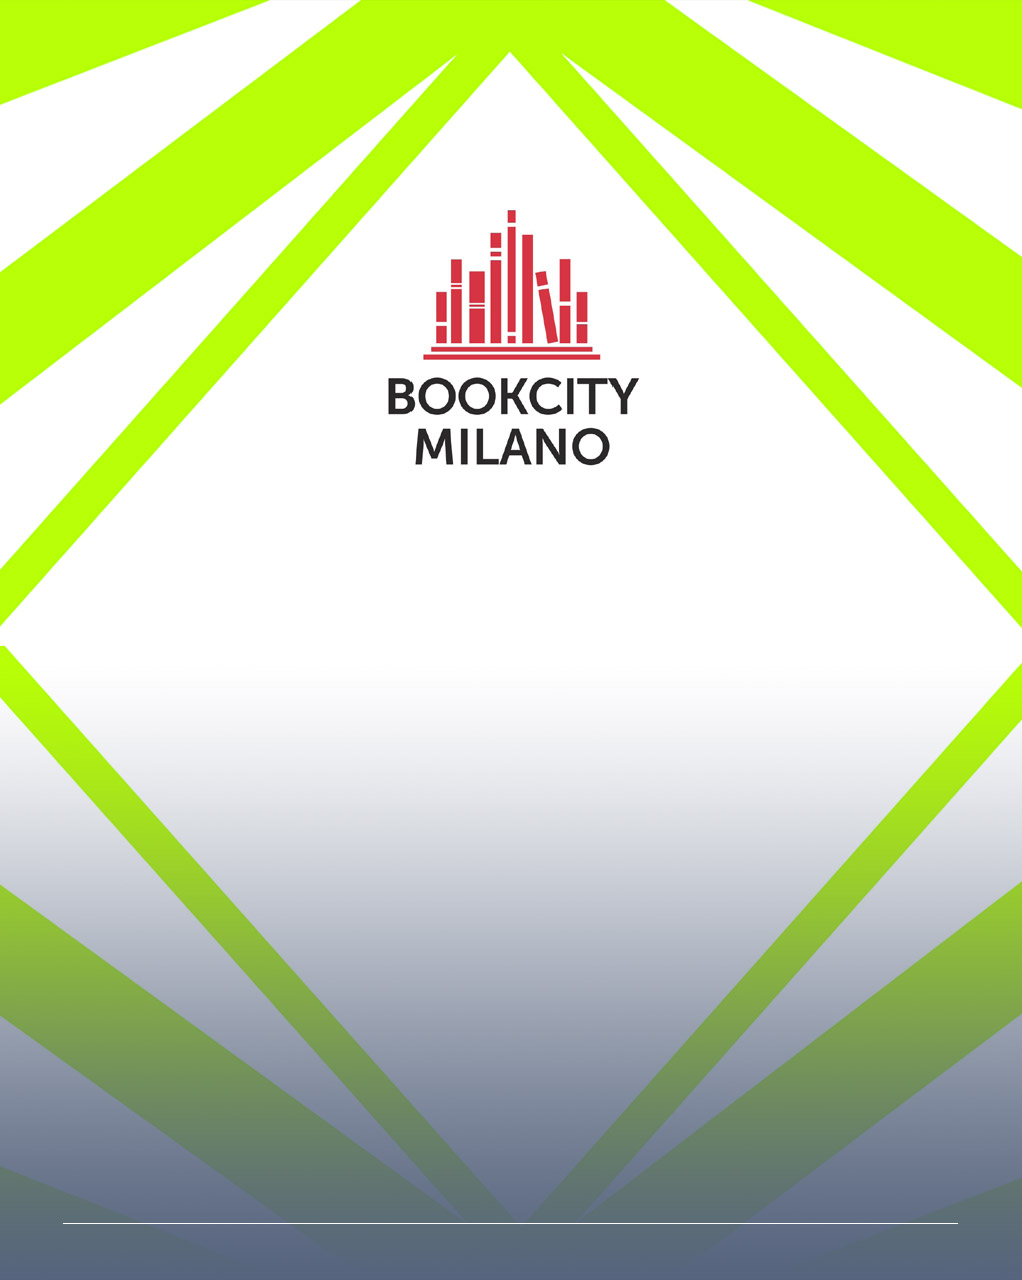 Immagine astratta con fasci di colore verde acceso e il logo di bookcity milano